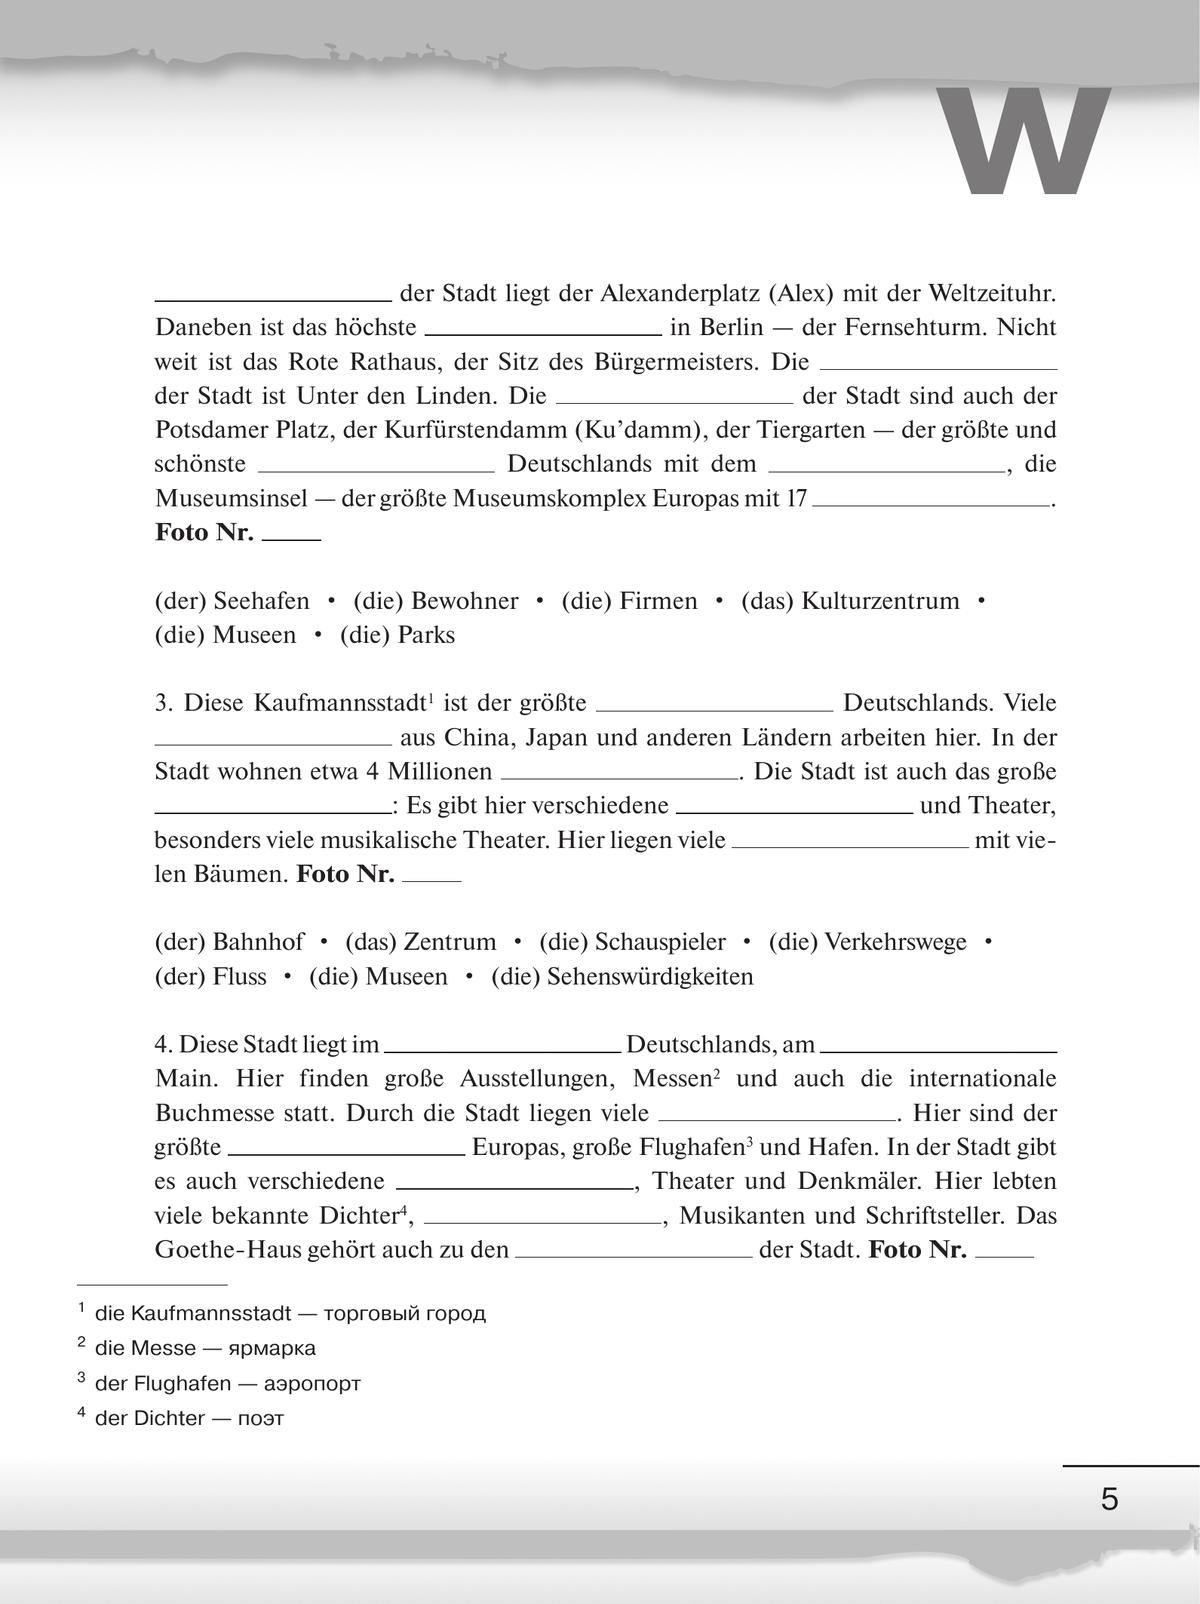 Немецкий язык. Рабочая тетрадь. 6 класс 4